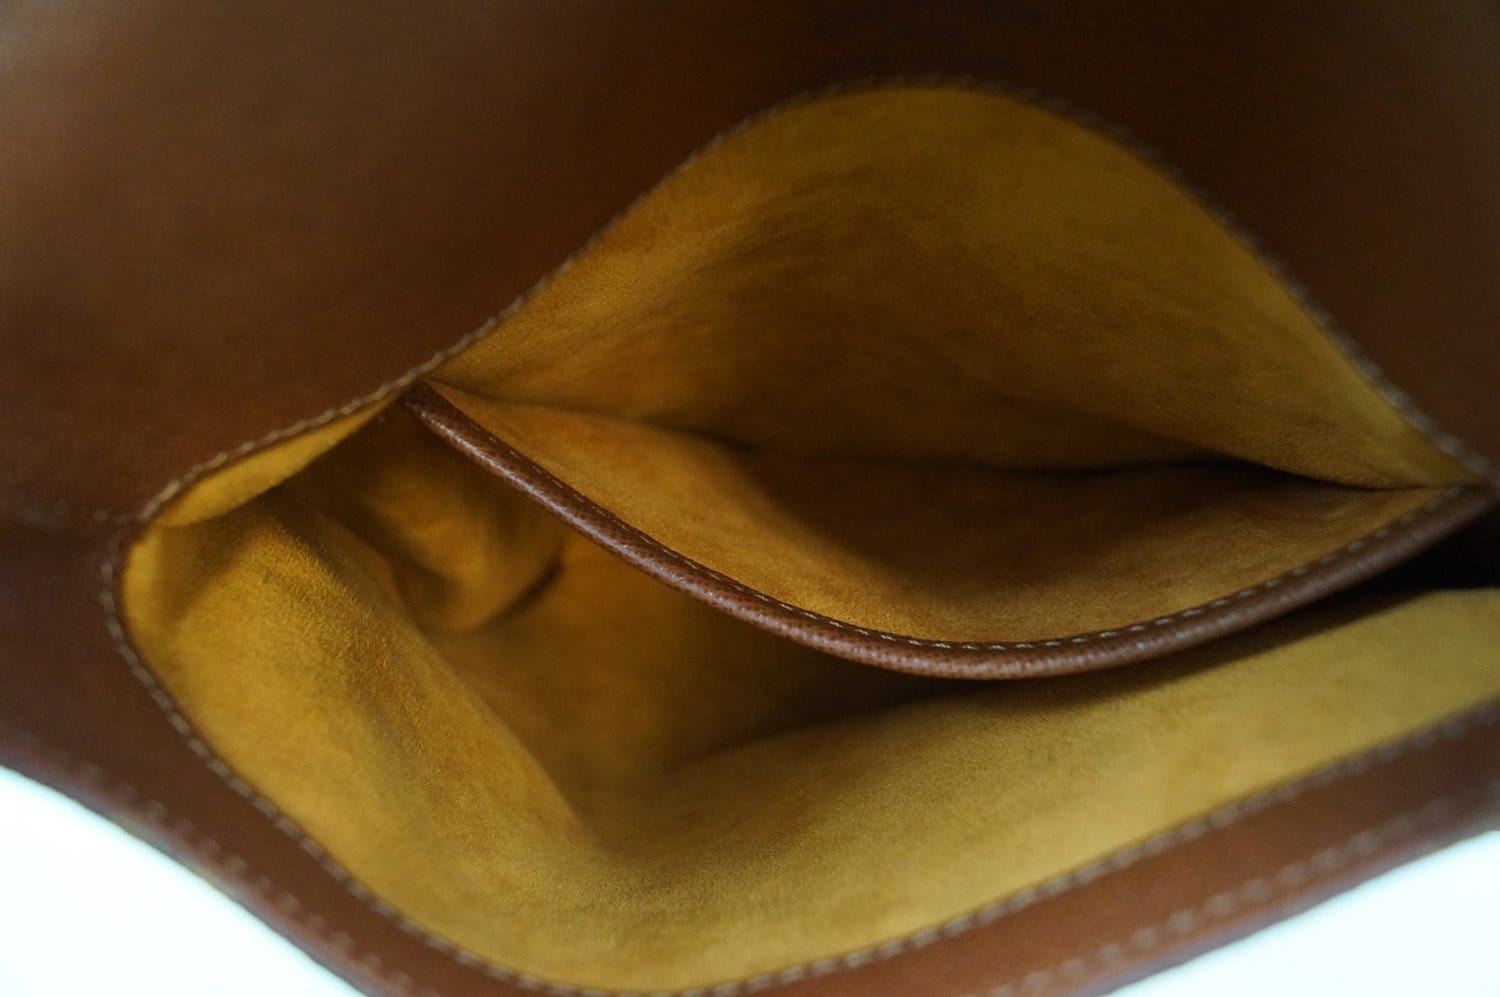 Louis Vuitton Monogram Musette Salsa PM Short Strap Bag – I MISS